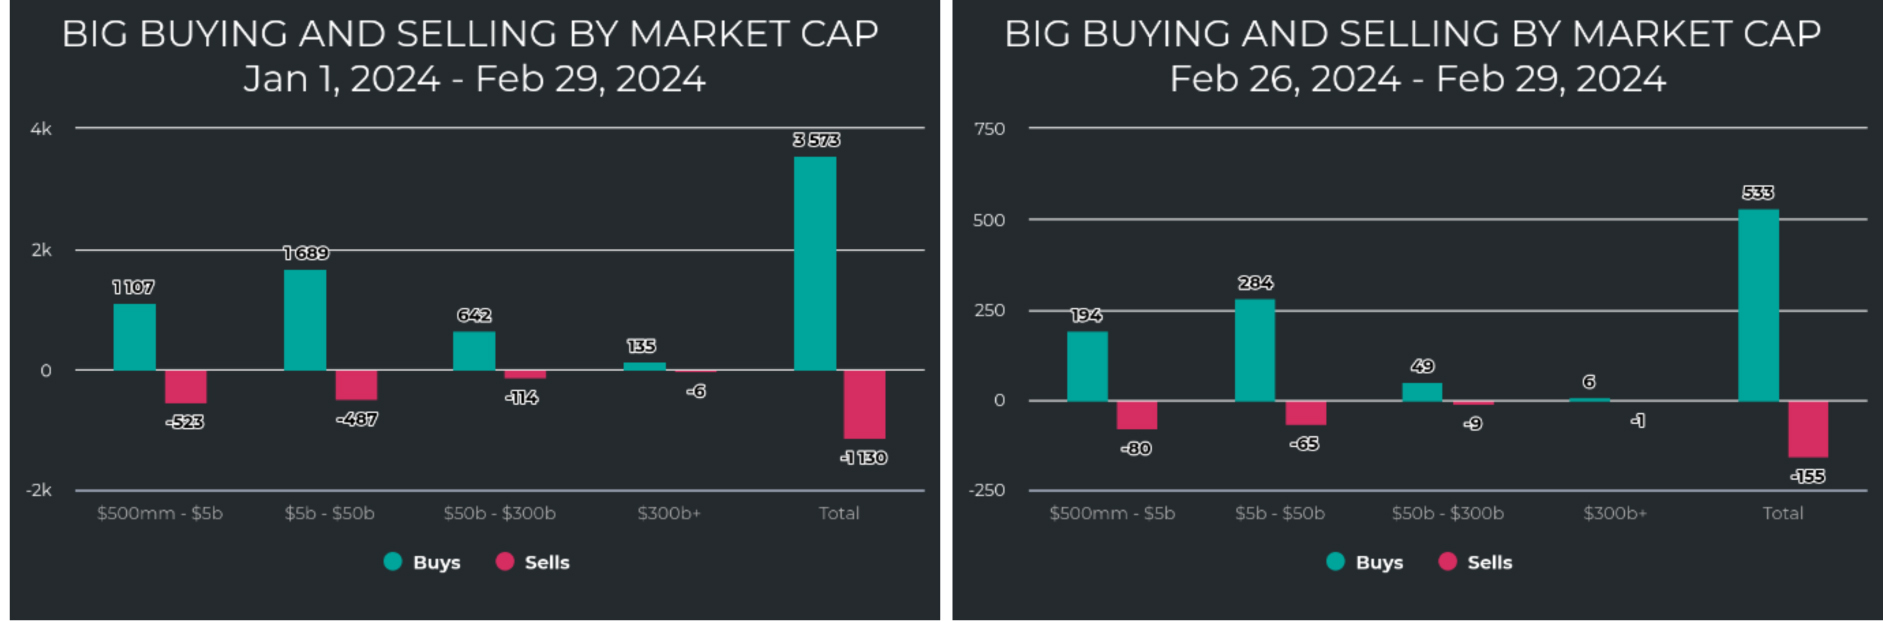 Big-Buying-Selling-Market-Cap